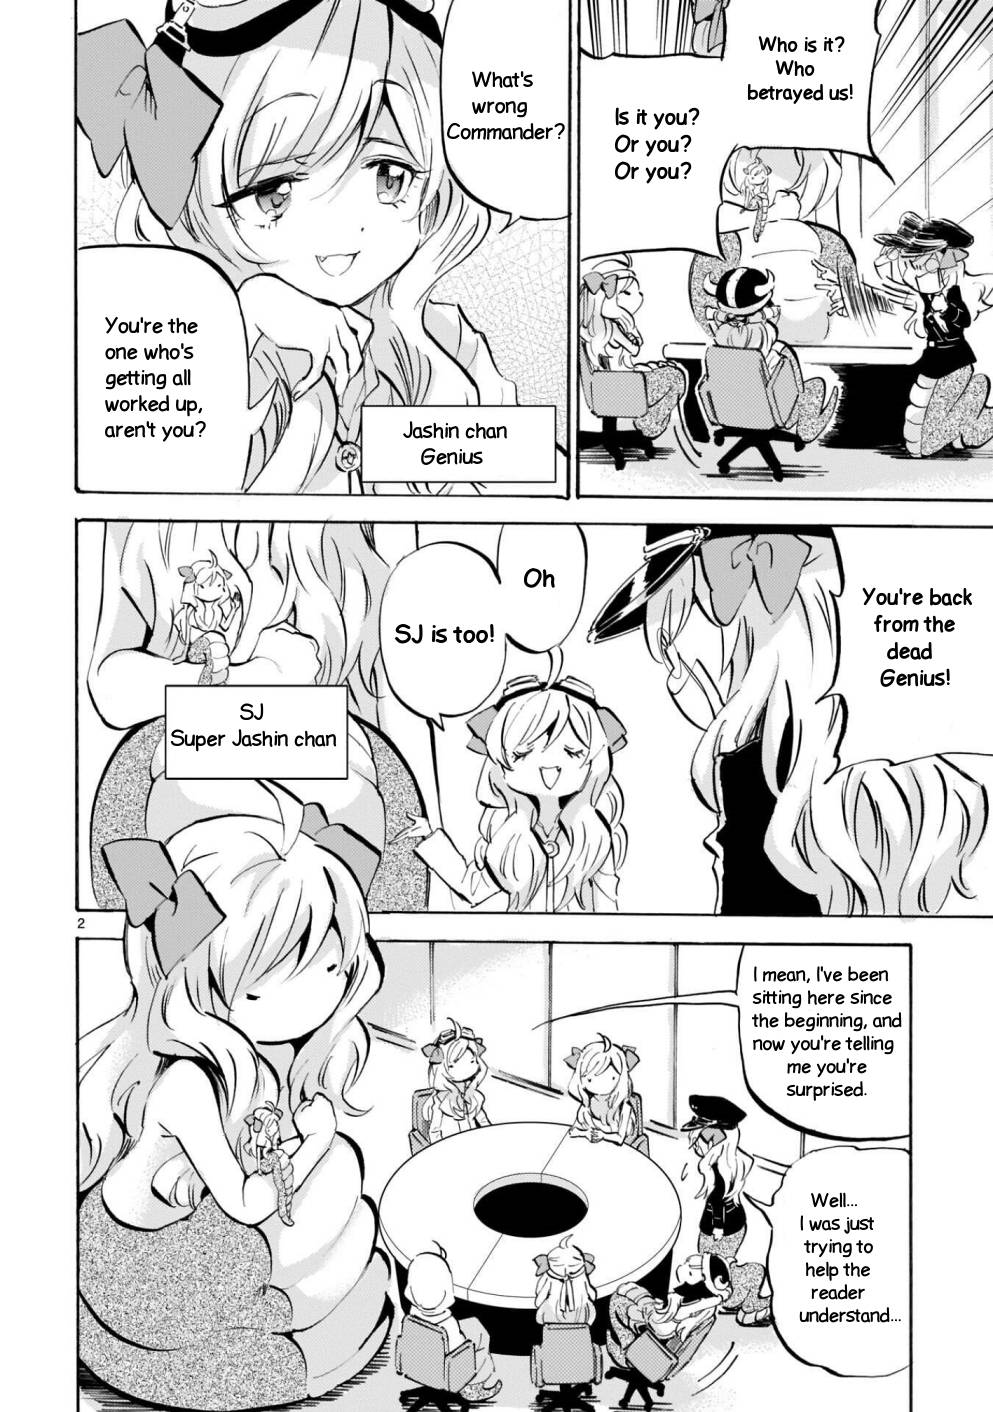 Jashin-chan Dropkick chapter 174 page 2